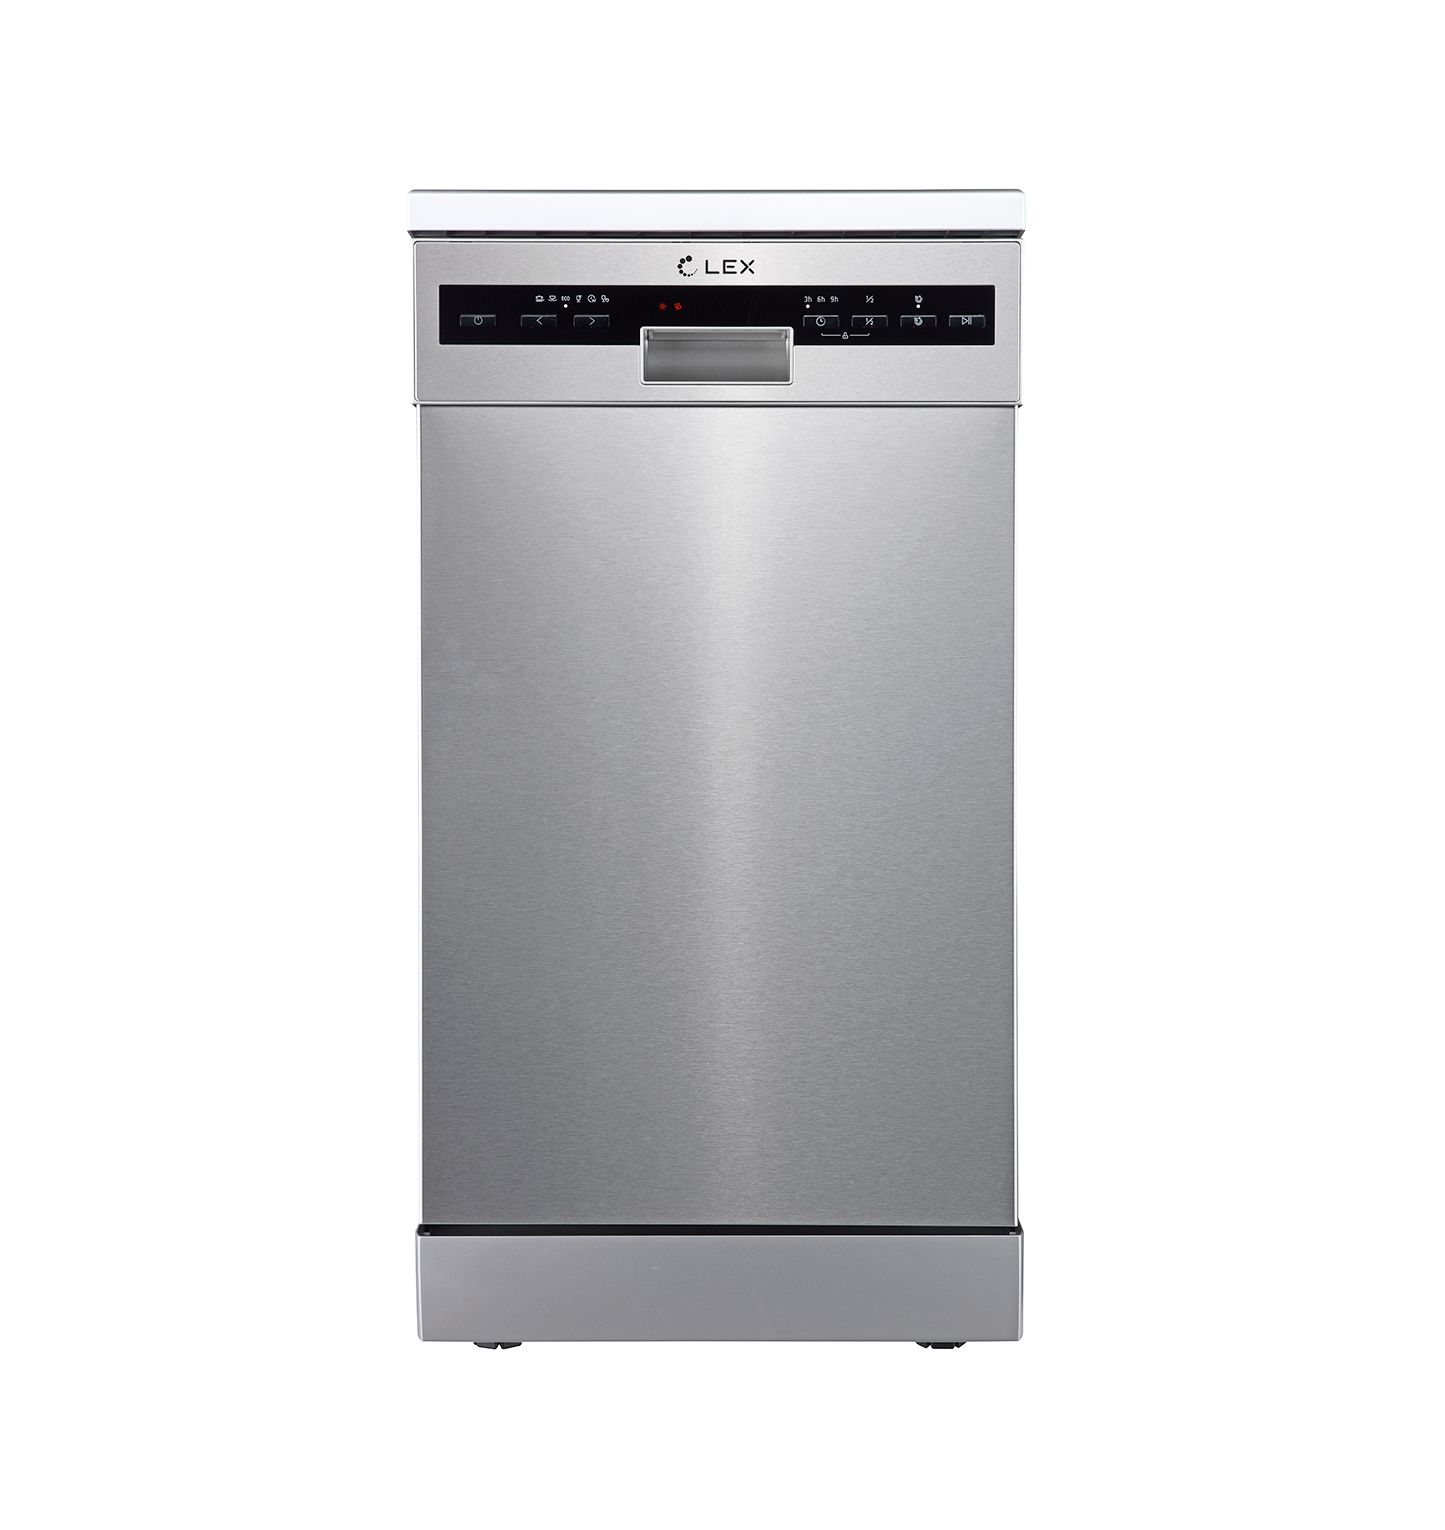 Посудомоечная машина LEX DW 4562 серебристый посудомоечная машина mijia vdw1501m серая черная